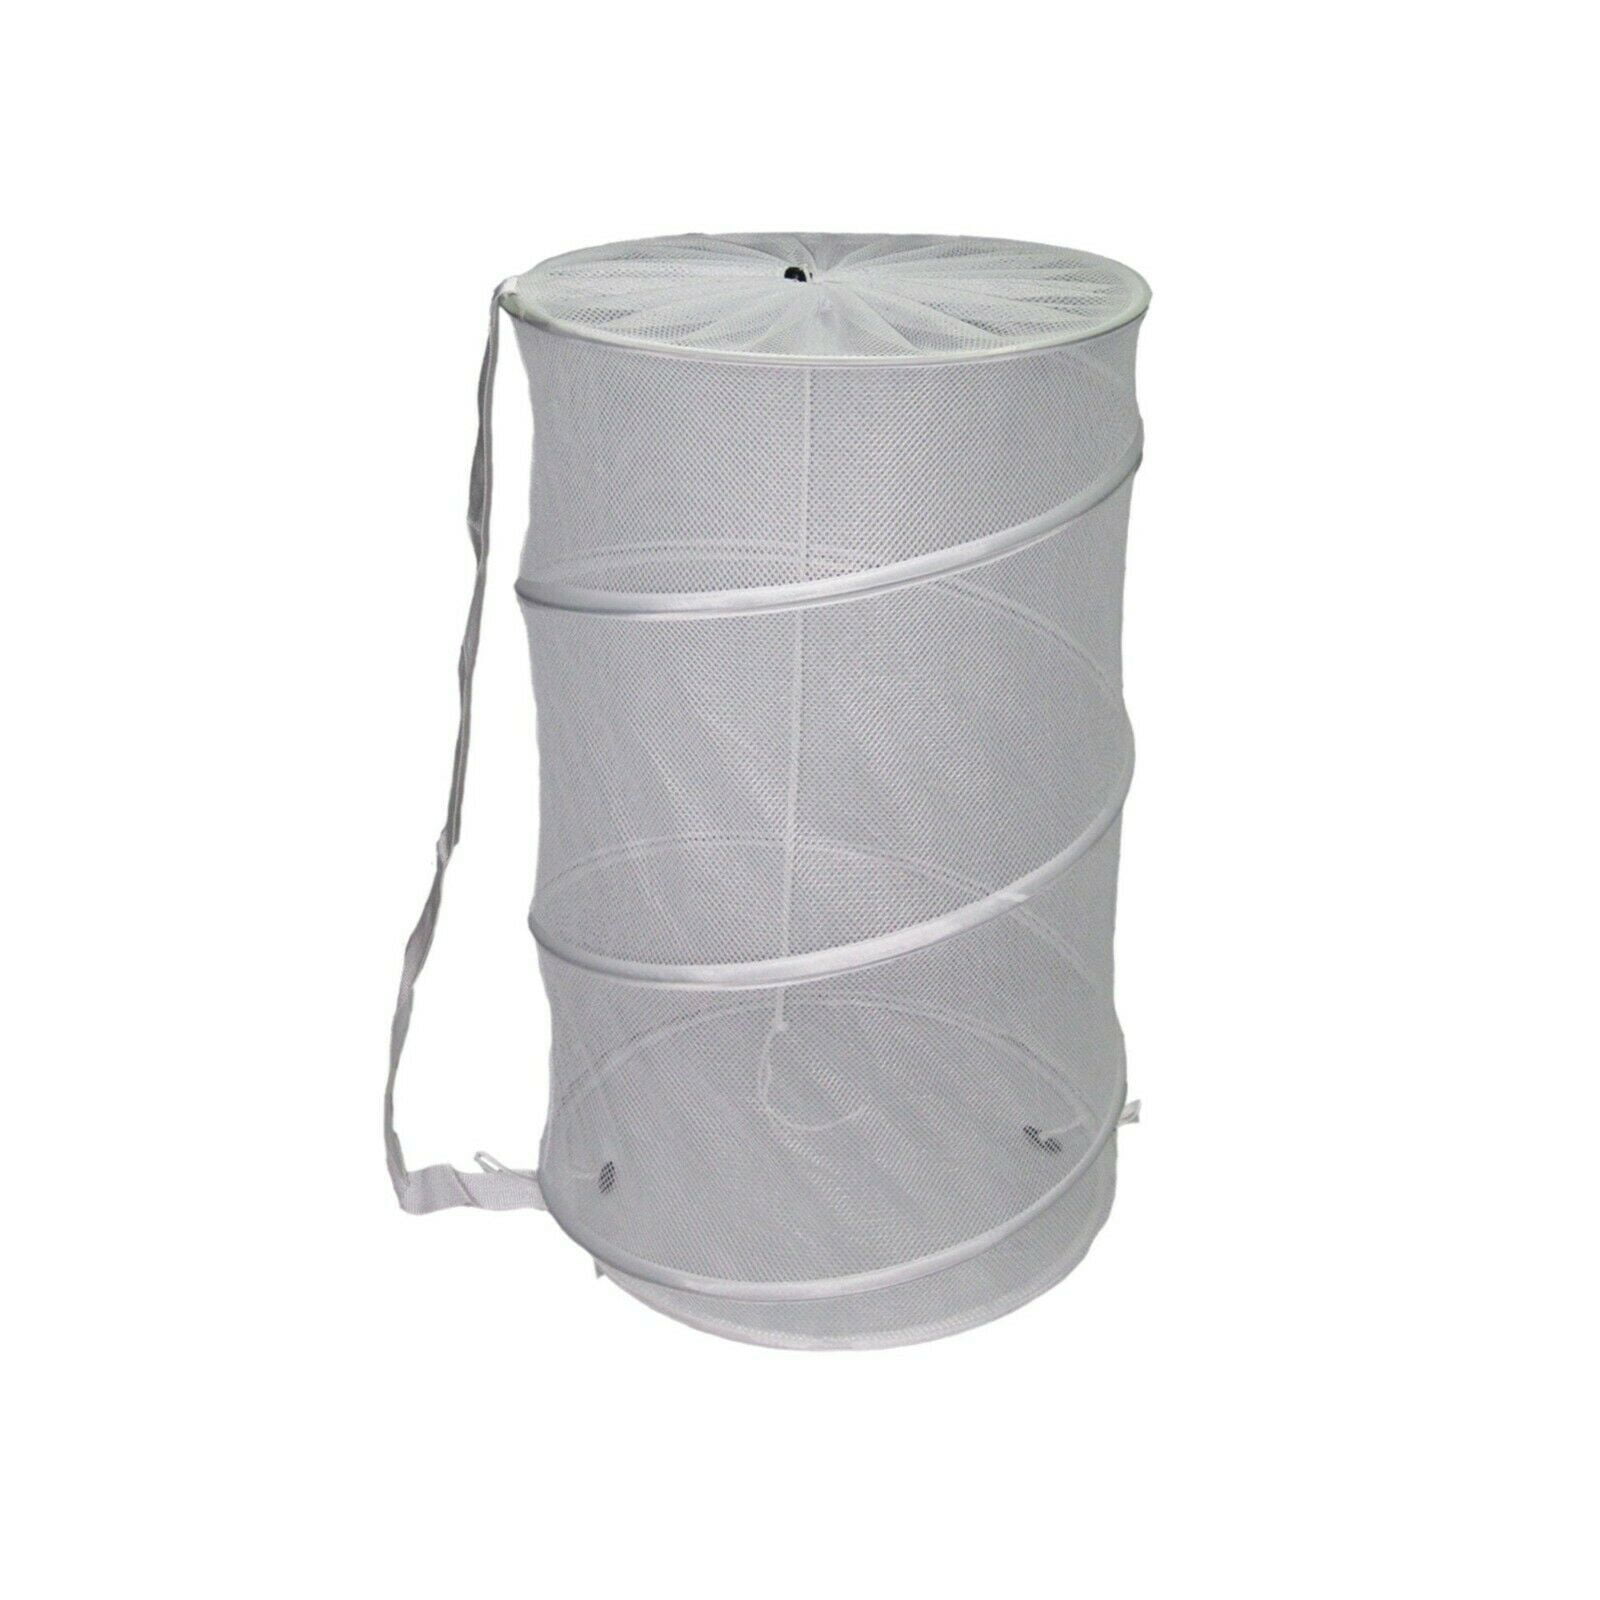 Laundry Basket Pop Up Barrel Hamper Collapsible Breathable Mesh Bag 4 Colors 